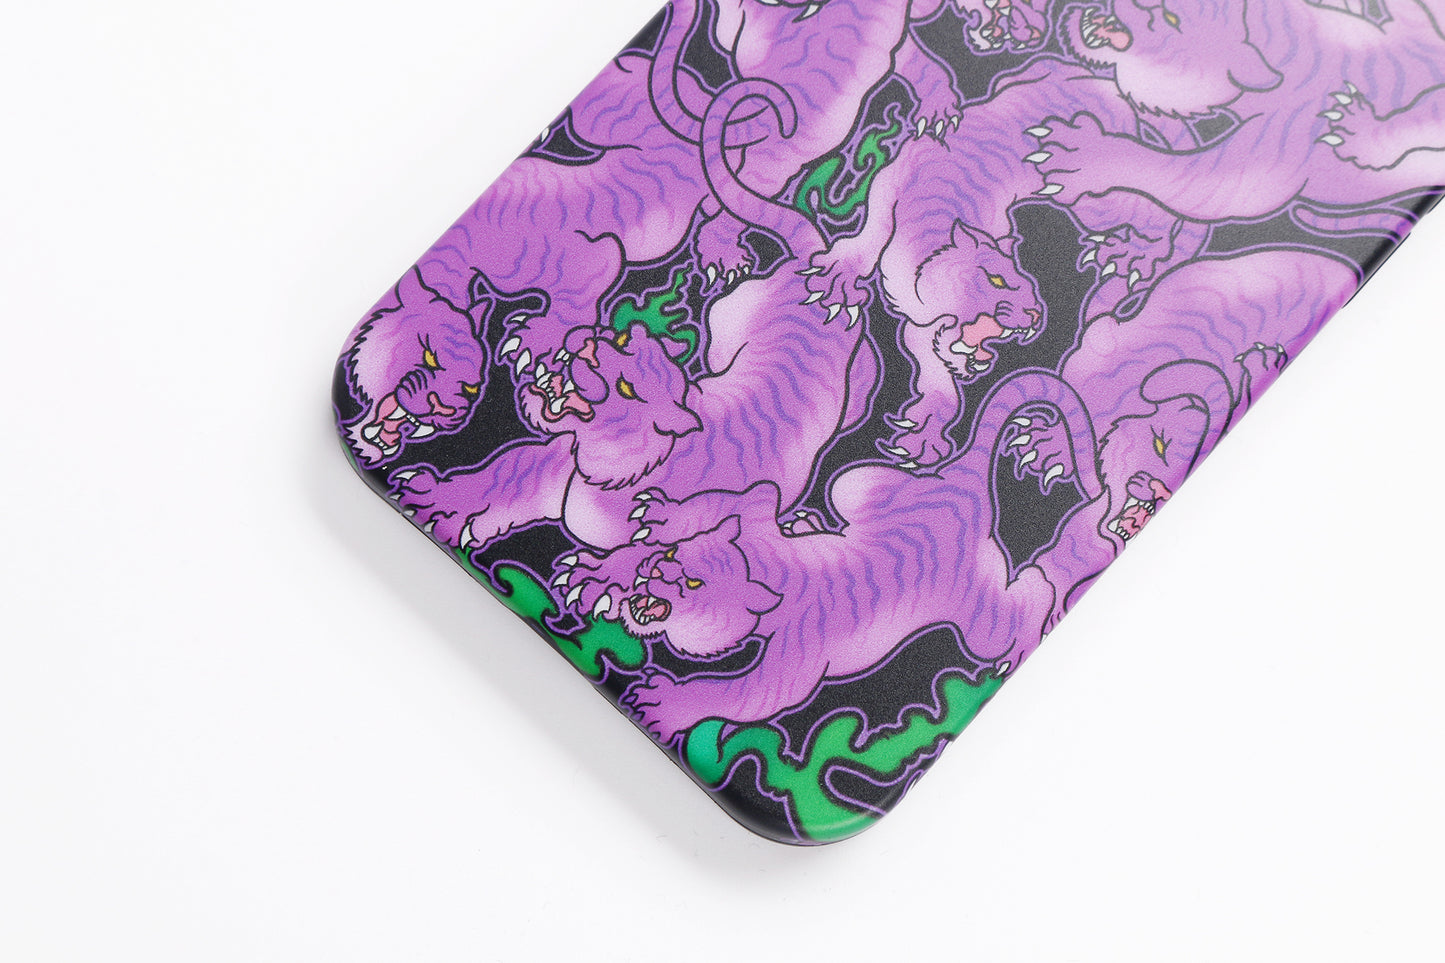 百虎 Hundred Tigers 紫晴 Purple Phone Case